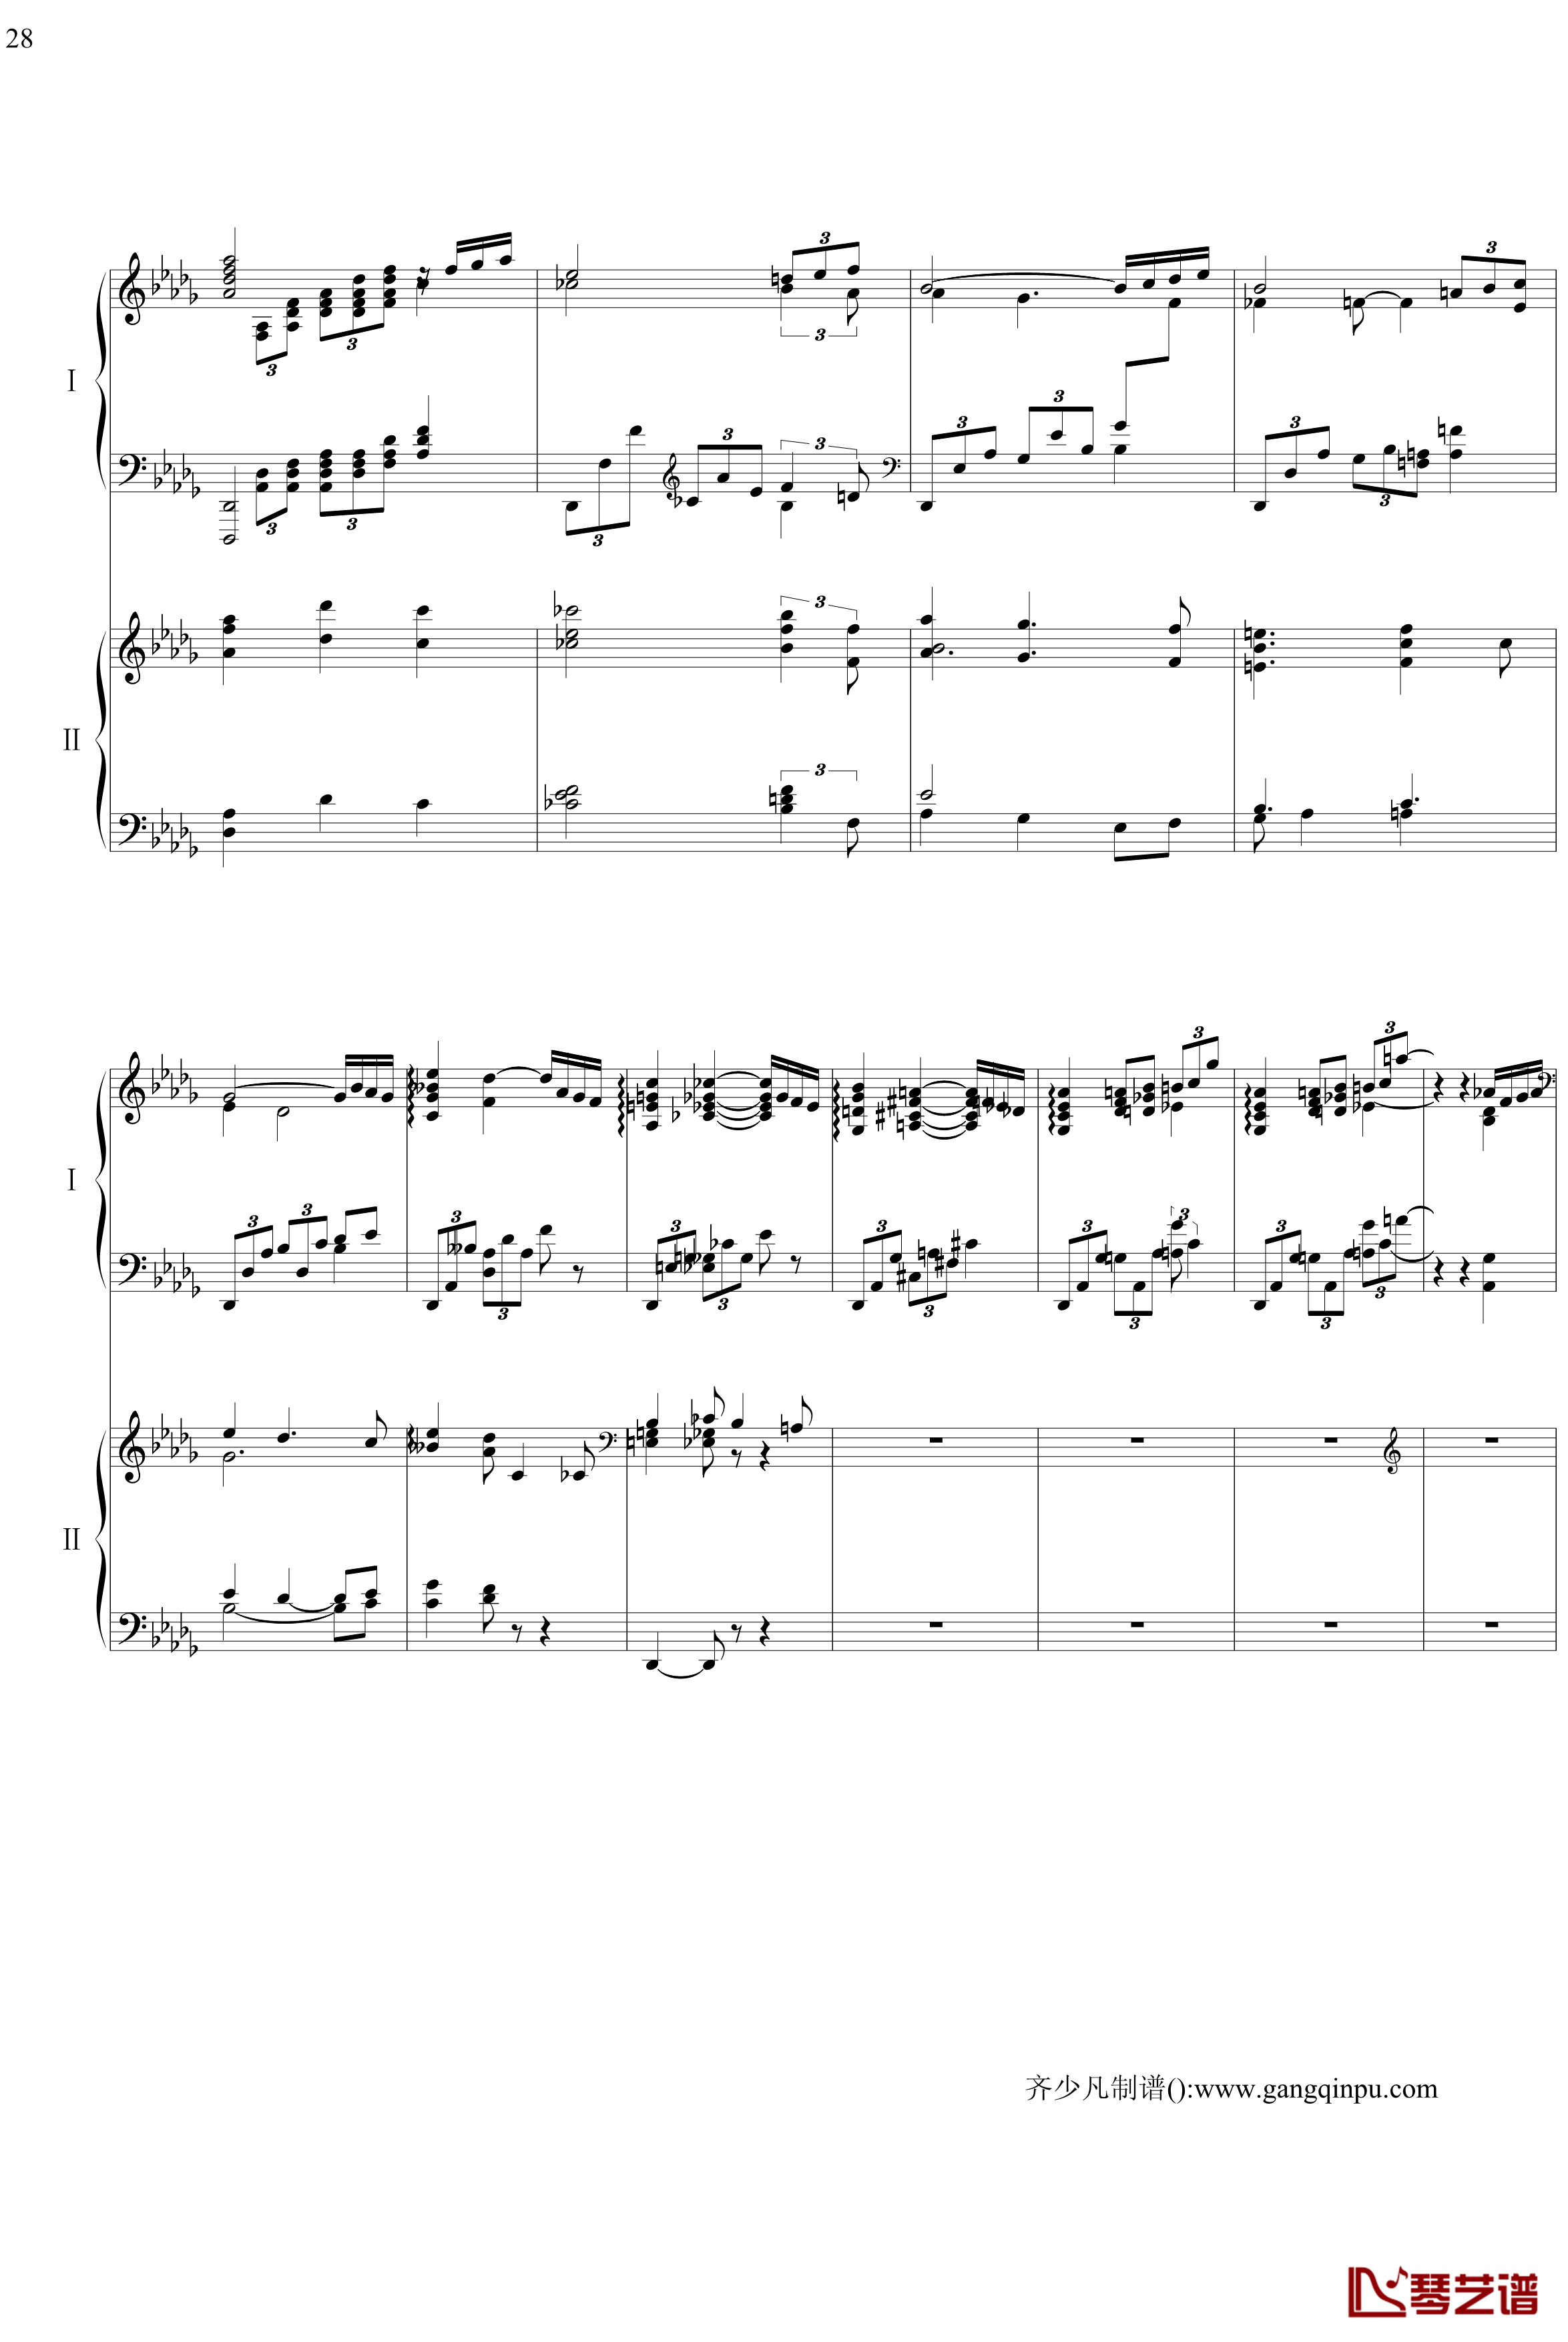 帕格尼尼主题狂想曲钢琴谱-11~18变奏-拉赫马尼若夫28